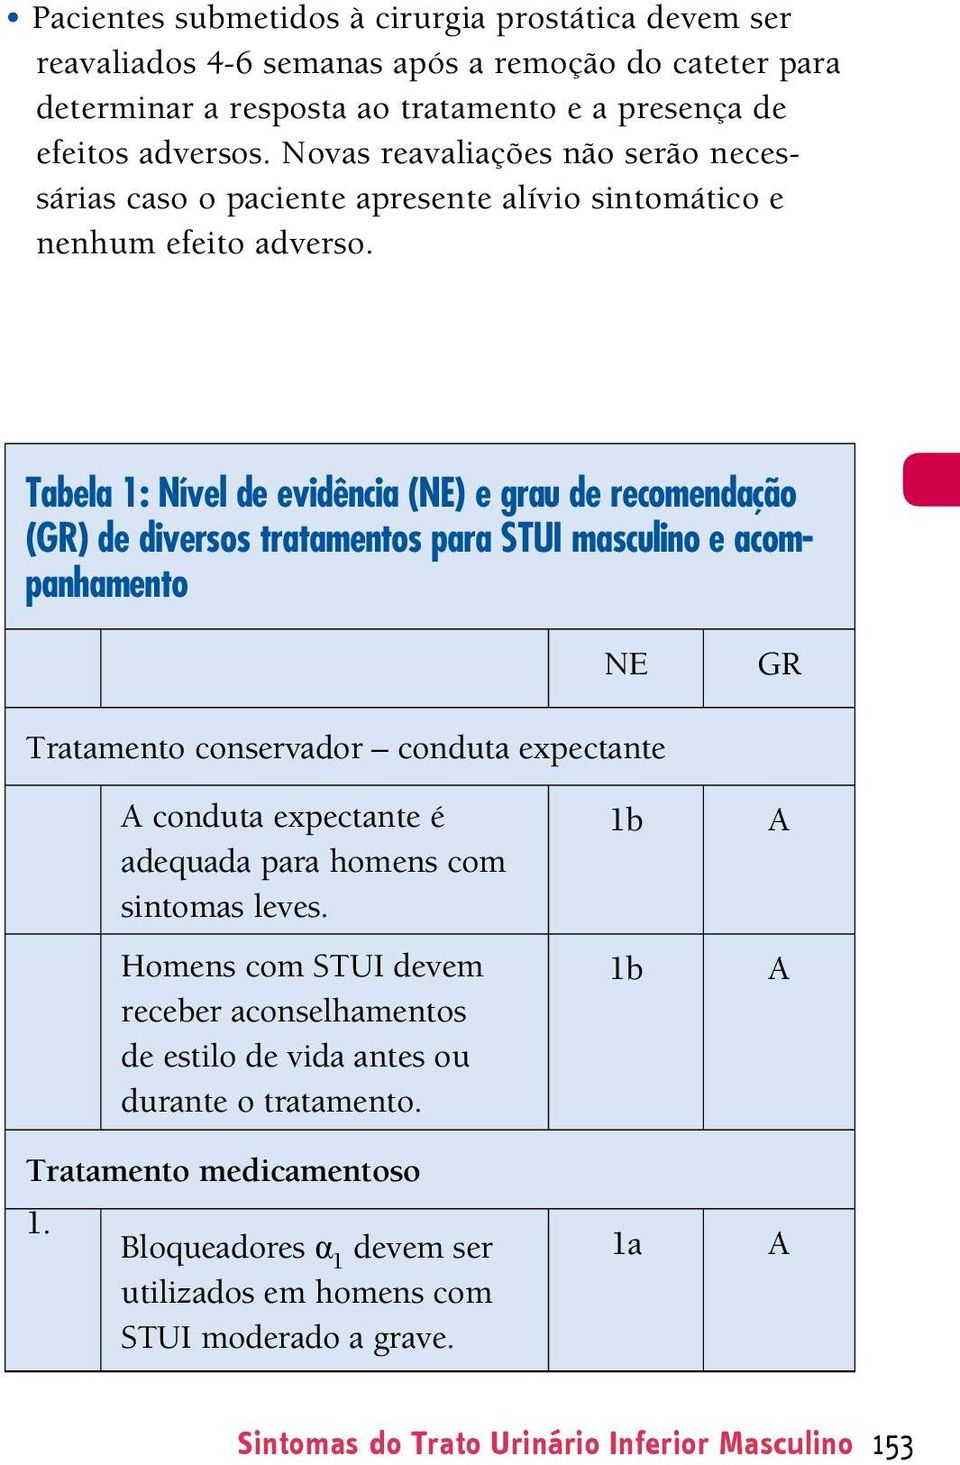 Tabela 1: Nível de evidência (NE) e grau de recomendação (GR) de diversos tratamentos para STUI masculino e acompanhamento NE GR Tratamento conservador conduta expectante conduta expectante é